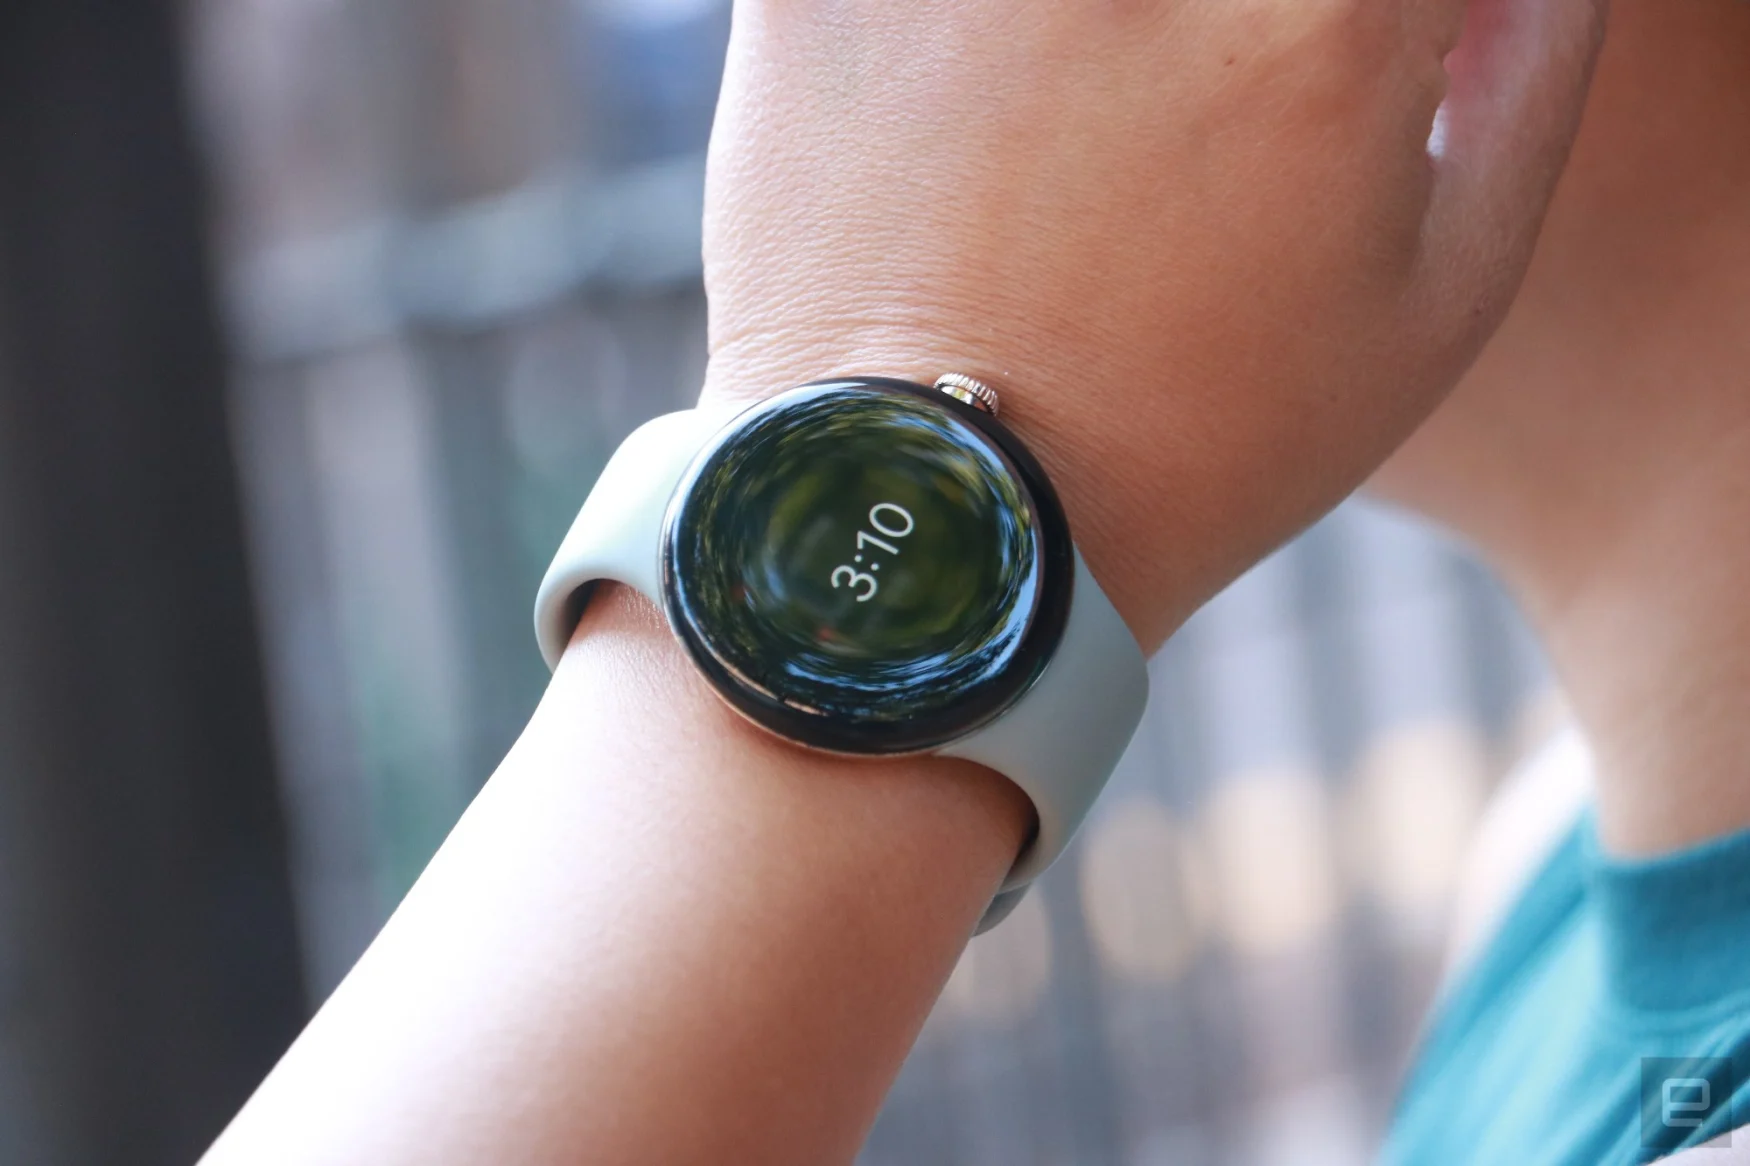 Il Pixel Watch al polso di una persona, che mostra l'ora come Always On Display.